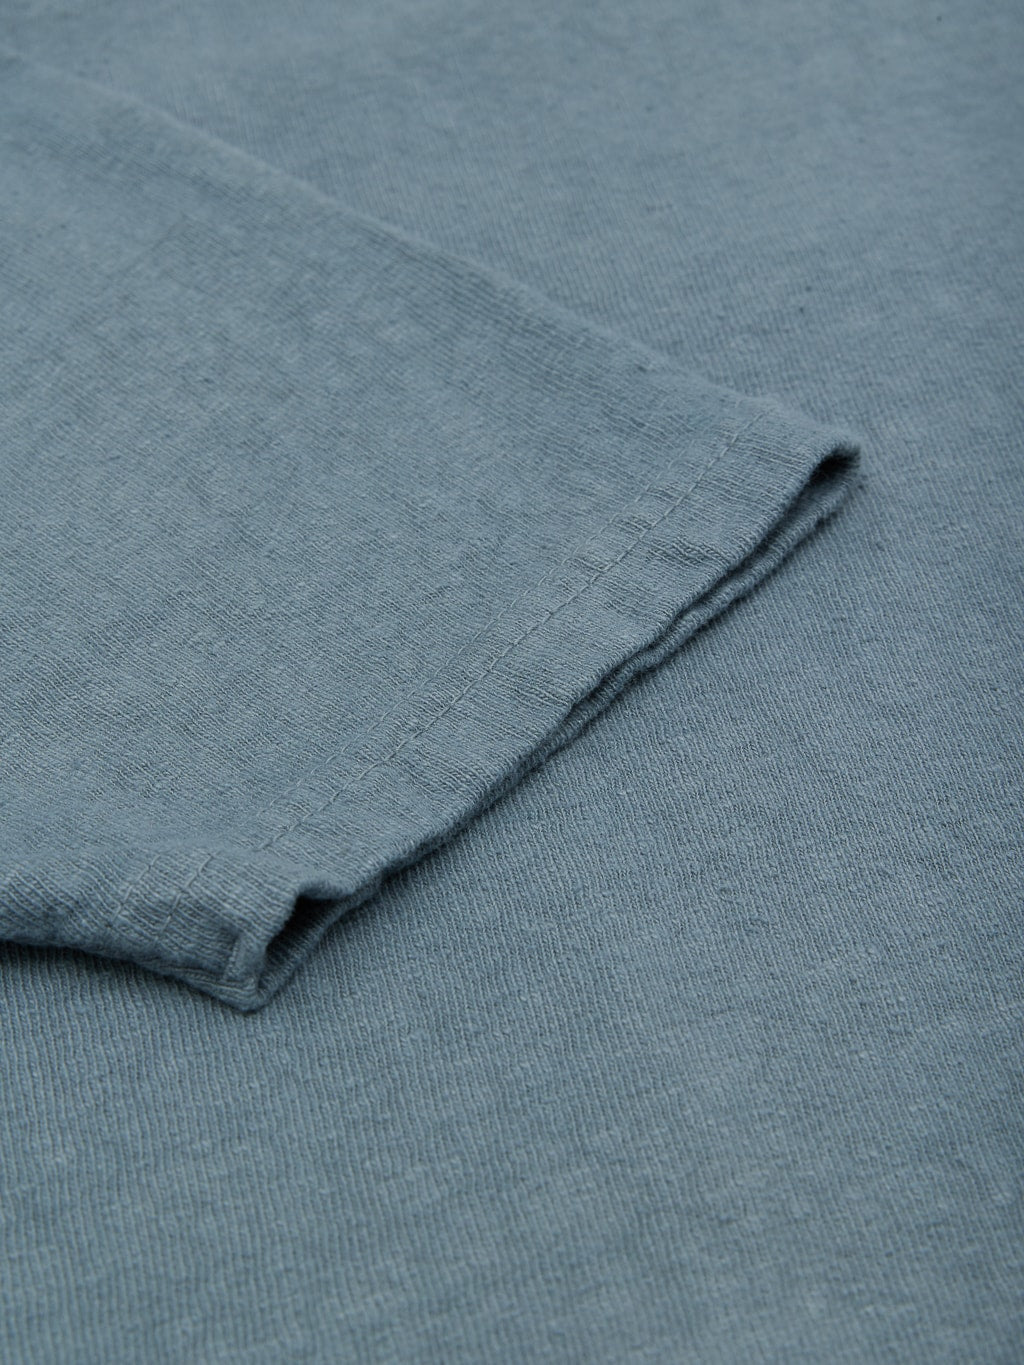 UES No 8 Slub Nep Short Sleeve Tshirt Grey fabric closeup